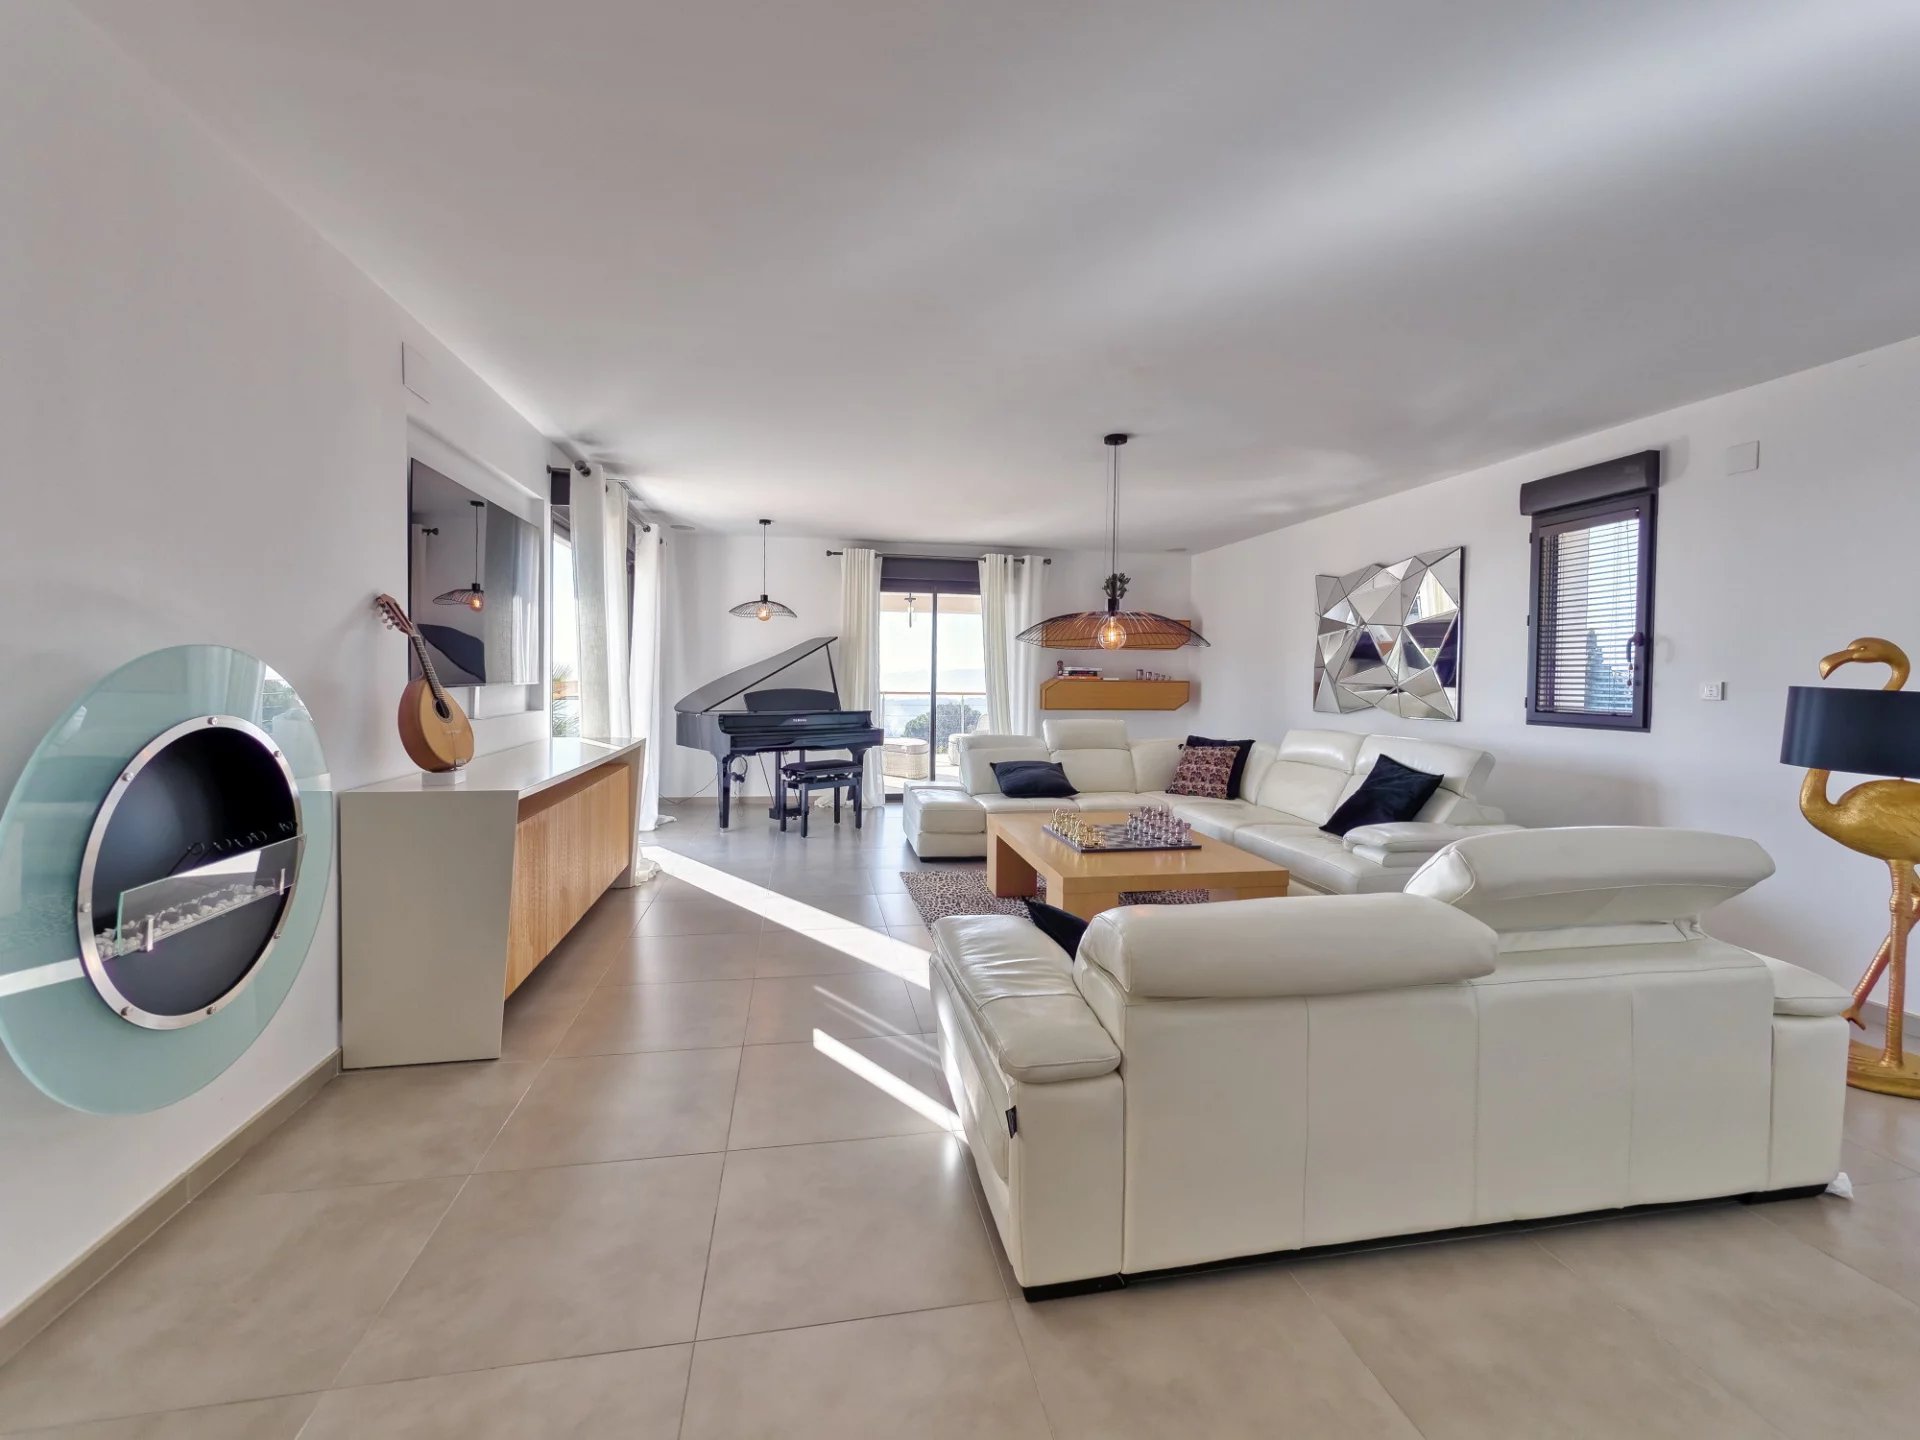 A vendre Villa contemporaine 280 m² avec 2P et studio  vue panoramique mer et montagnes